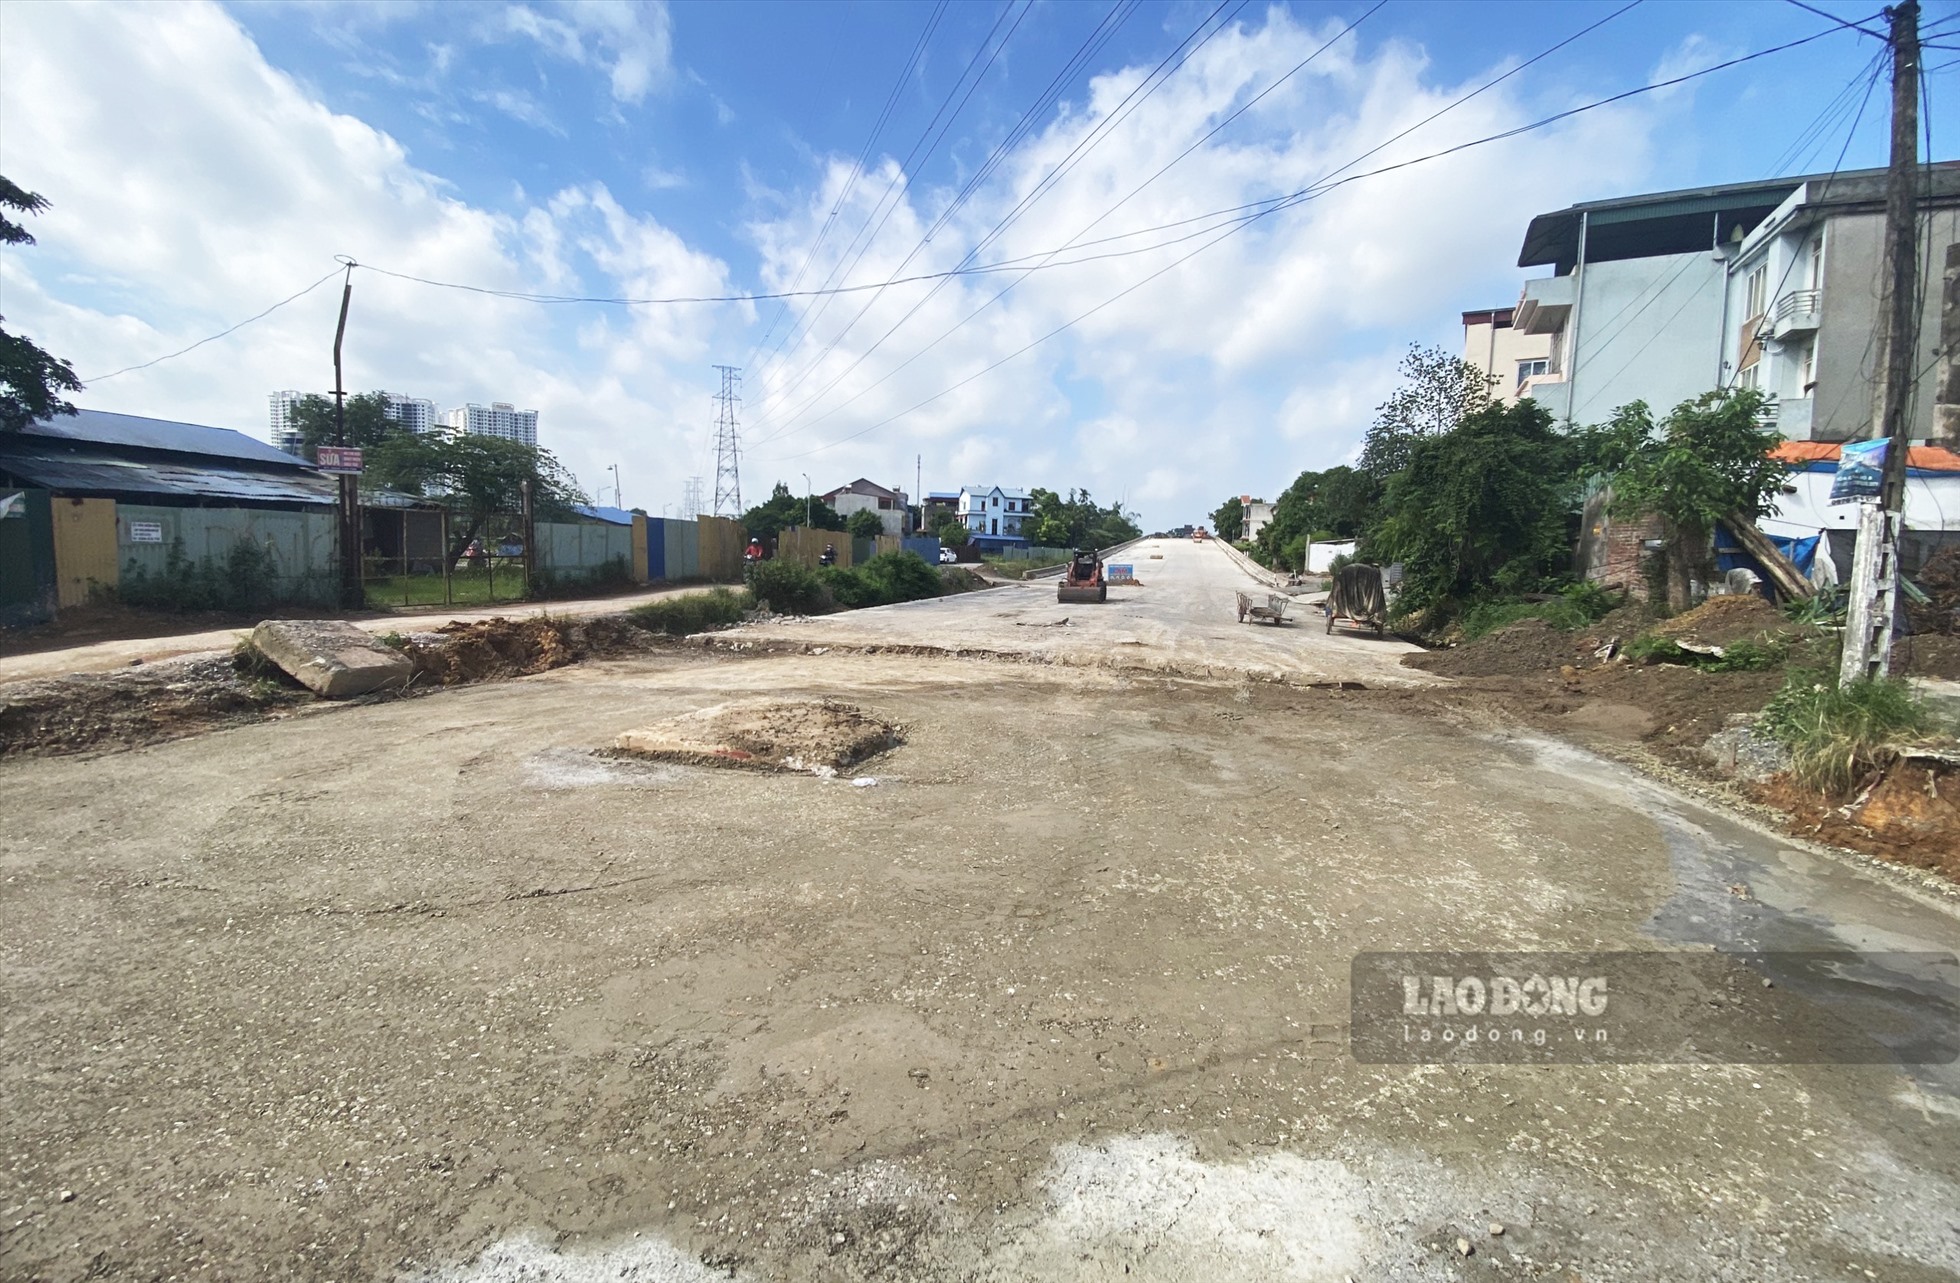 Đường dẫn tại khu vực giao cắt với đường Z115 (phường Tân Thịnh) vẫn đang trong giai đoạn làm nền, ngổn ngang vật liệu xây dựng.